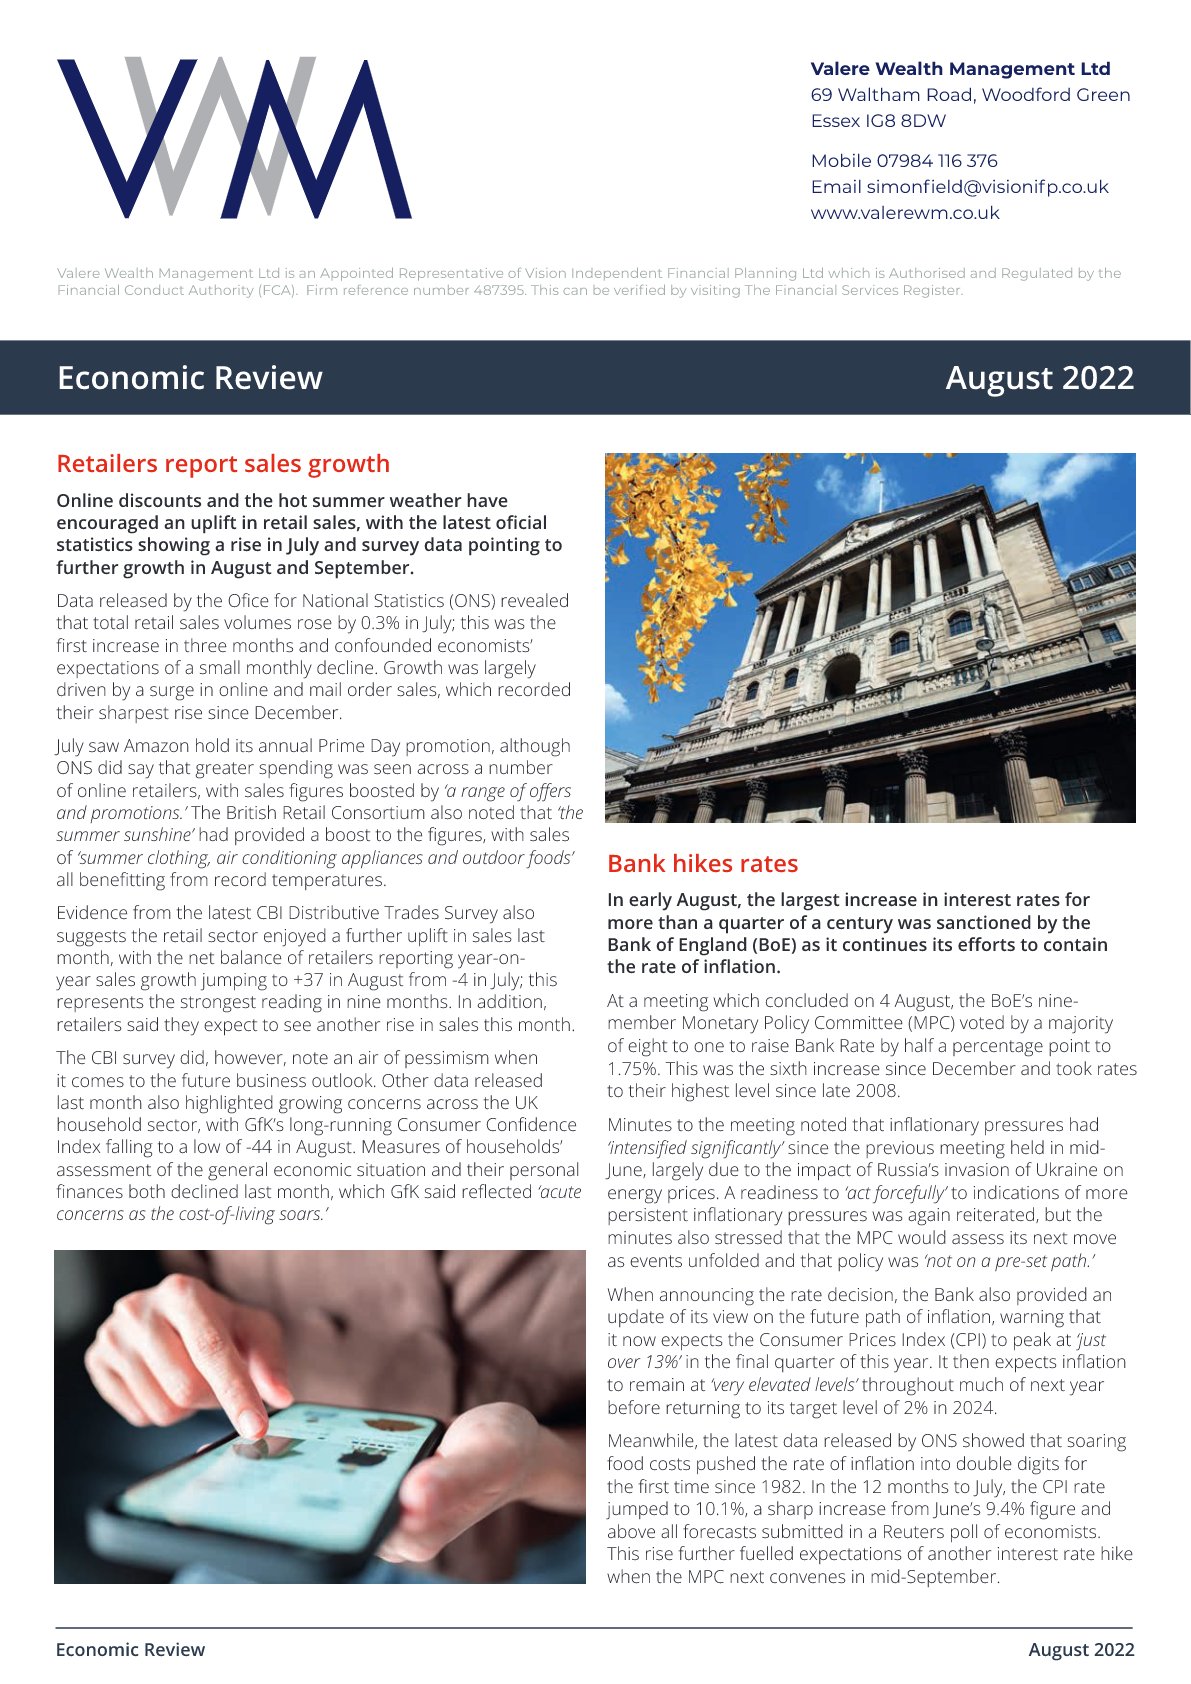 Economic Review Aug 2022